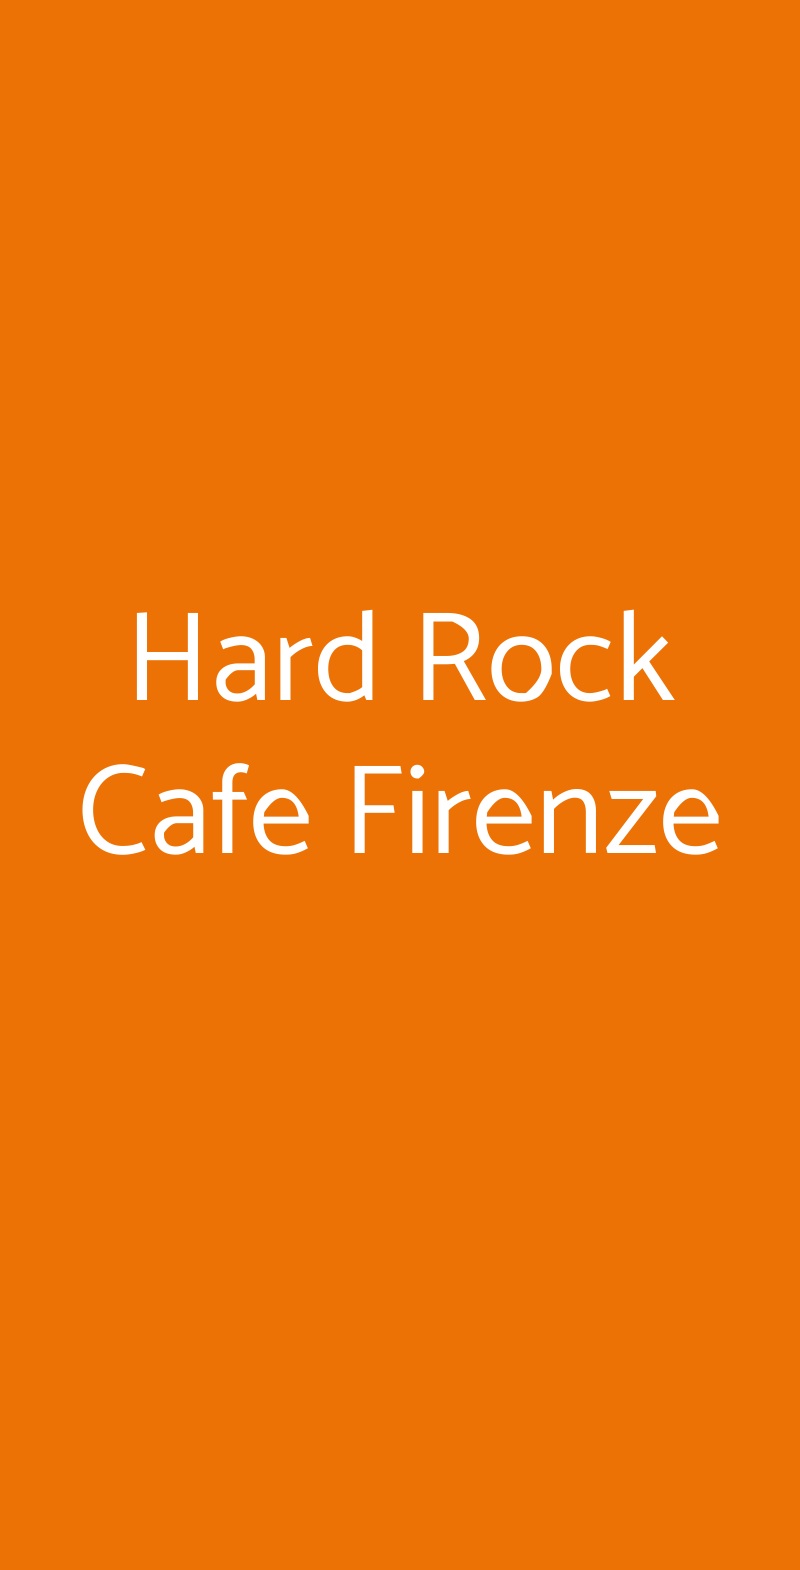 Hard Rock Cafe Firenze Firenze menù 1 pagina